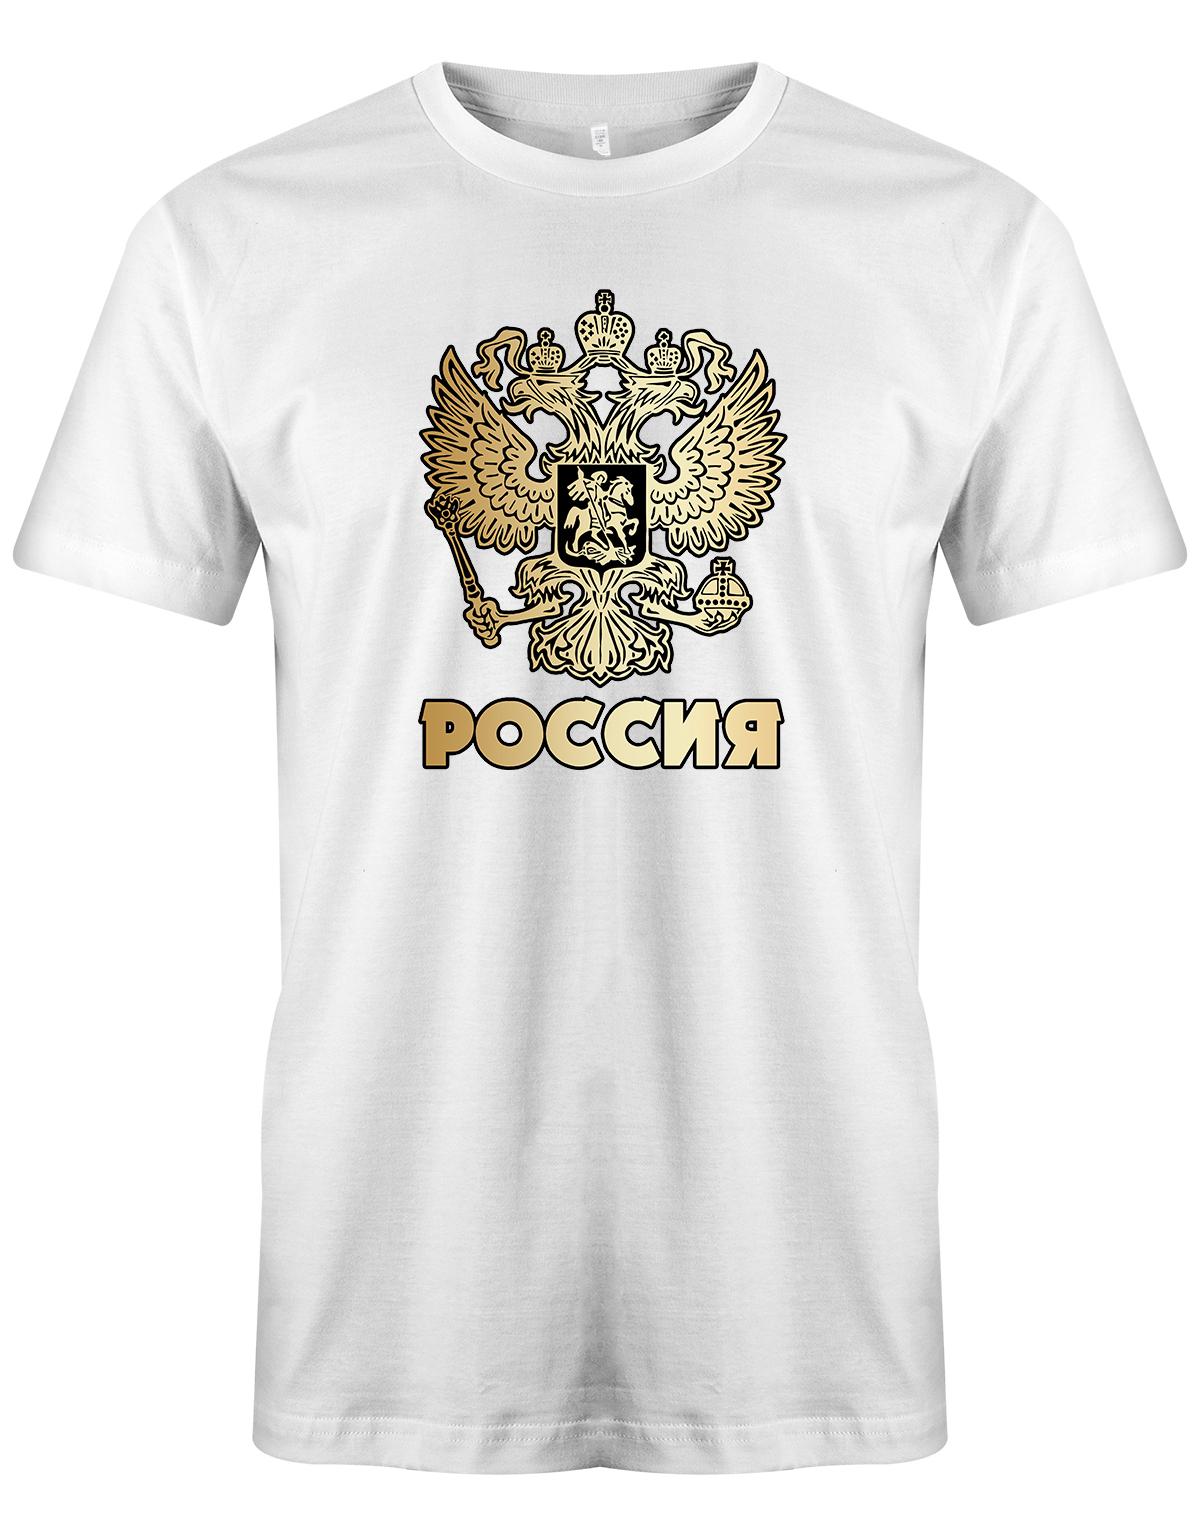 Poccnr-herren-Shirt-Weiss